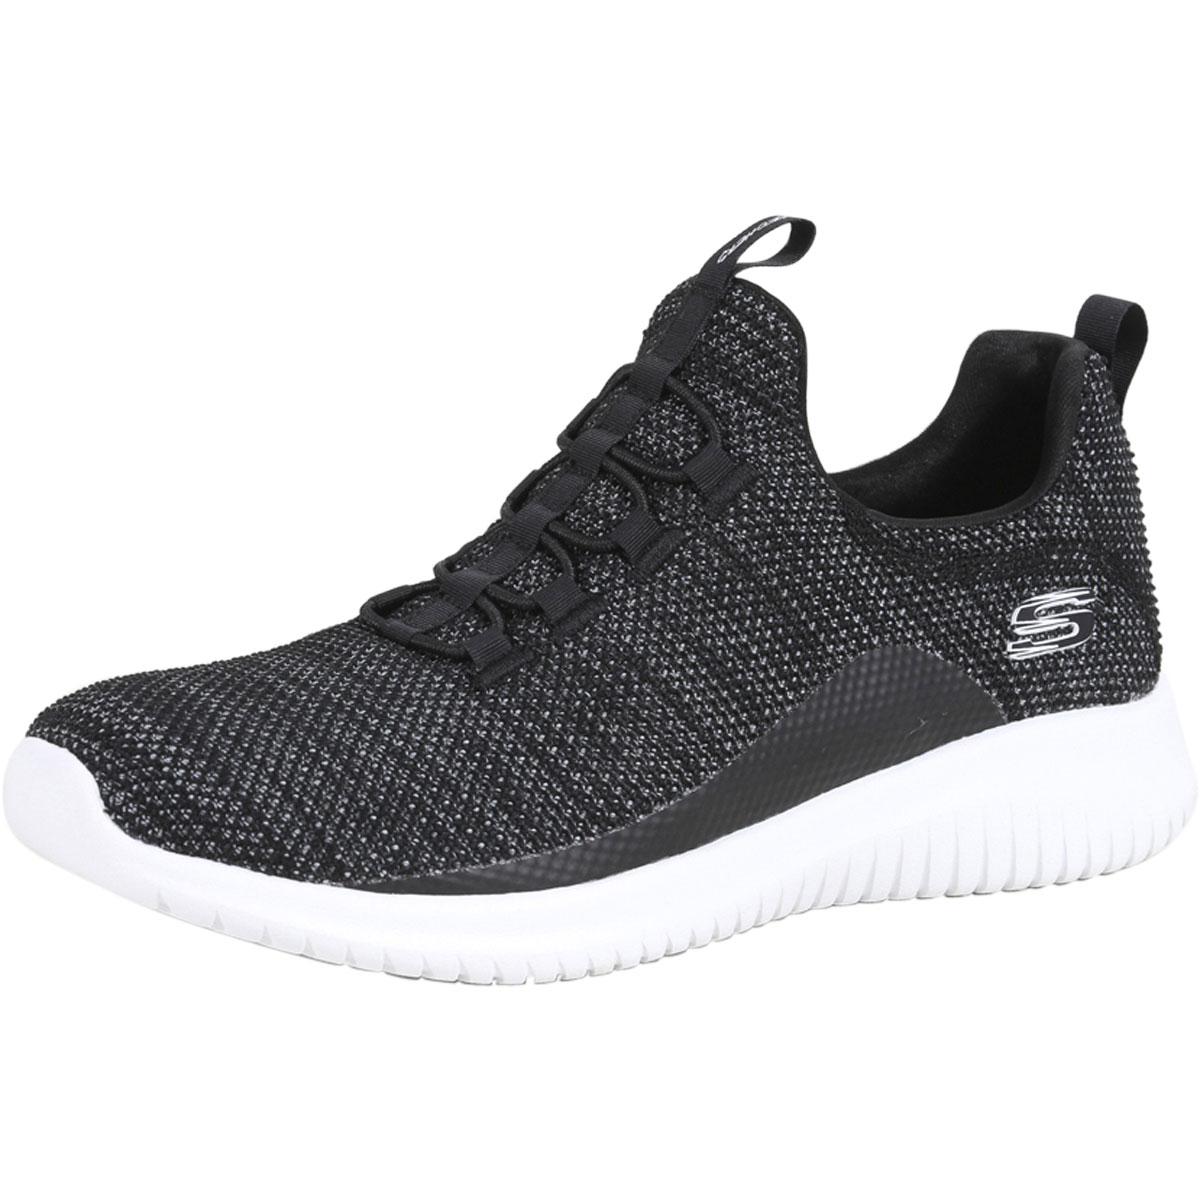 Skechers Women's Ultra Flex Capsule Memory Foam Sneakers Shoes - Black/White - 8.5 B(M) US